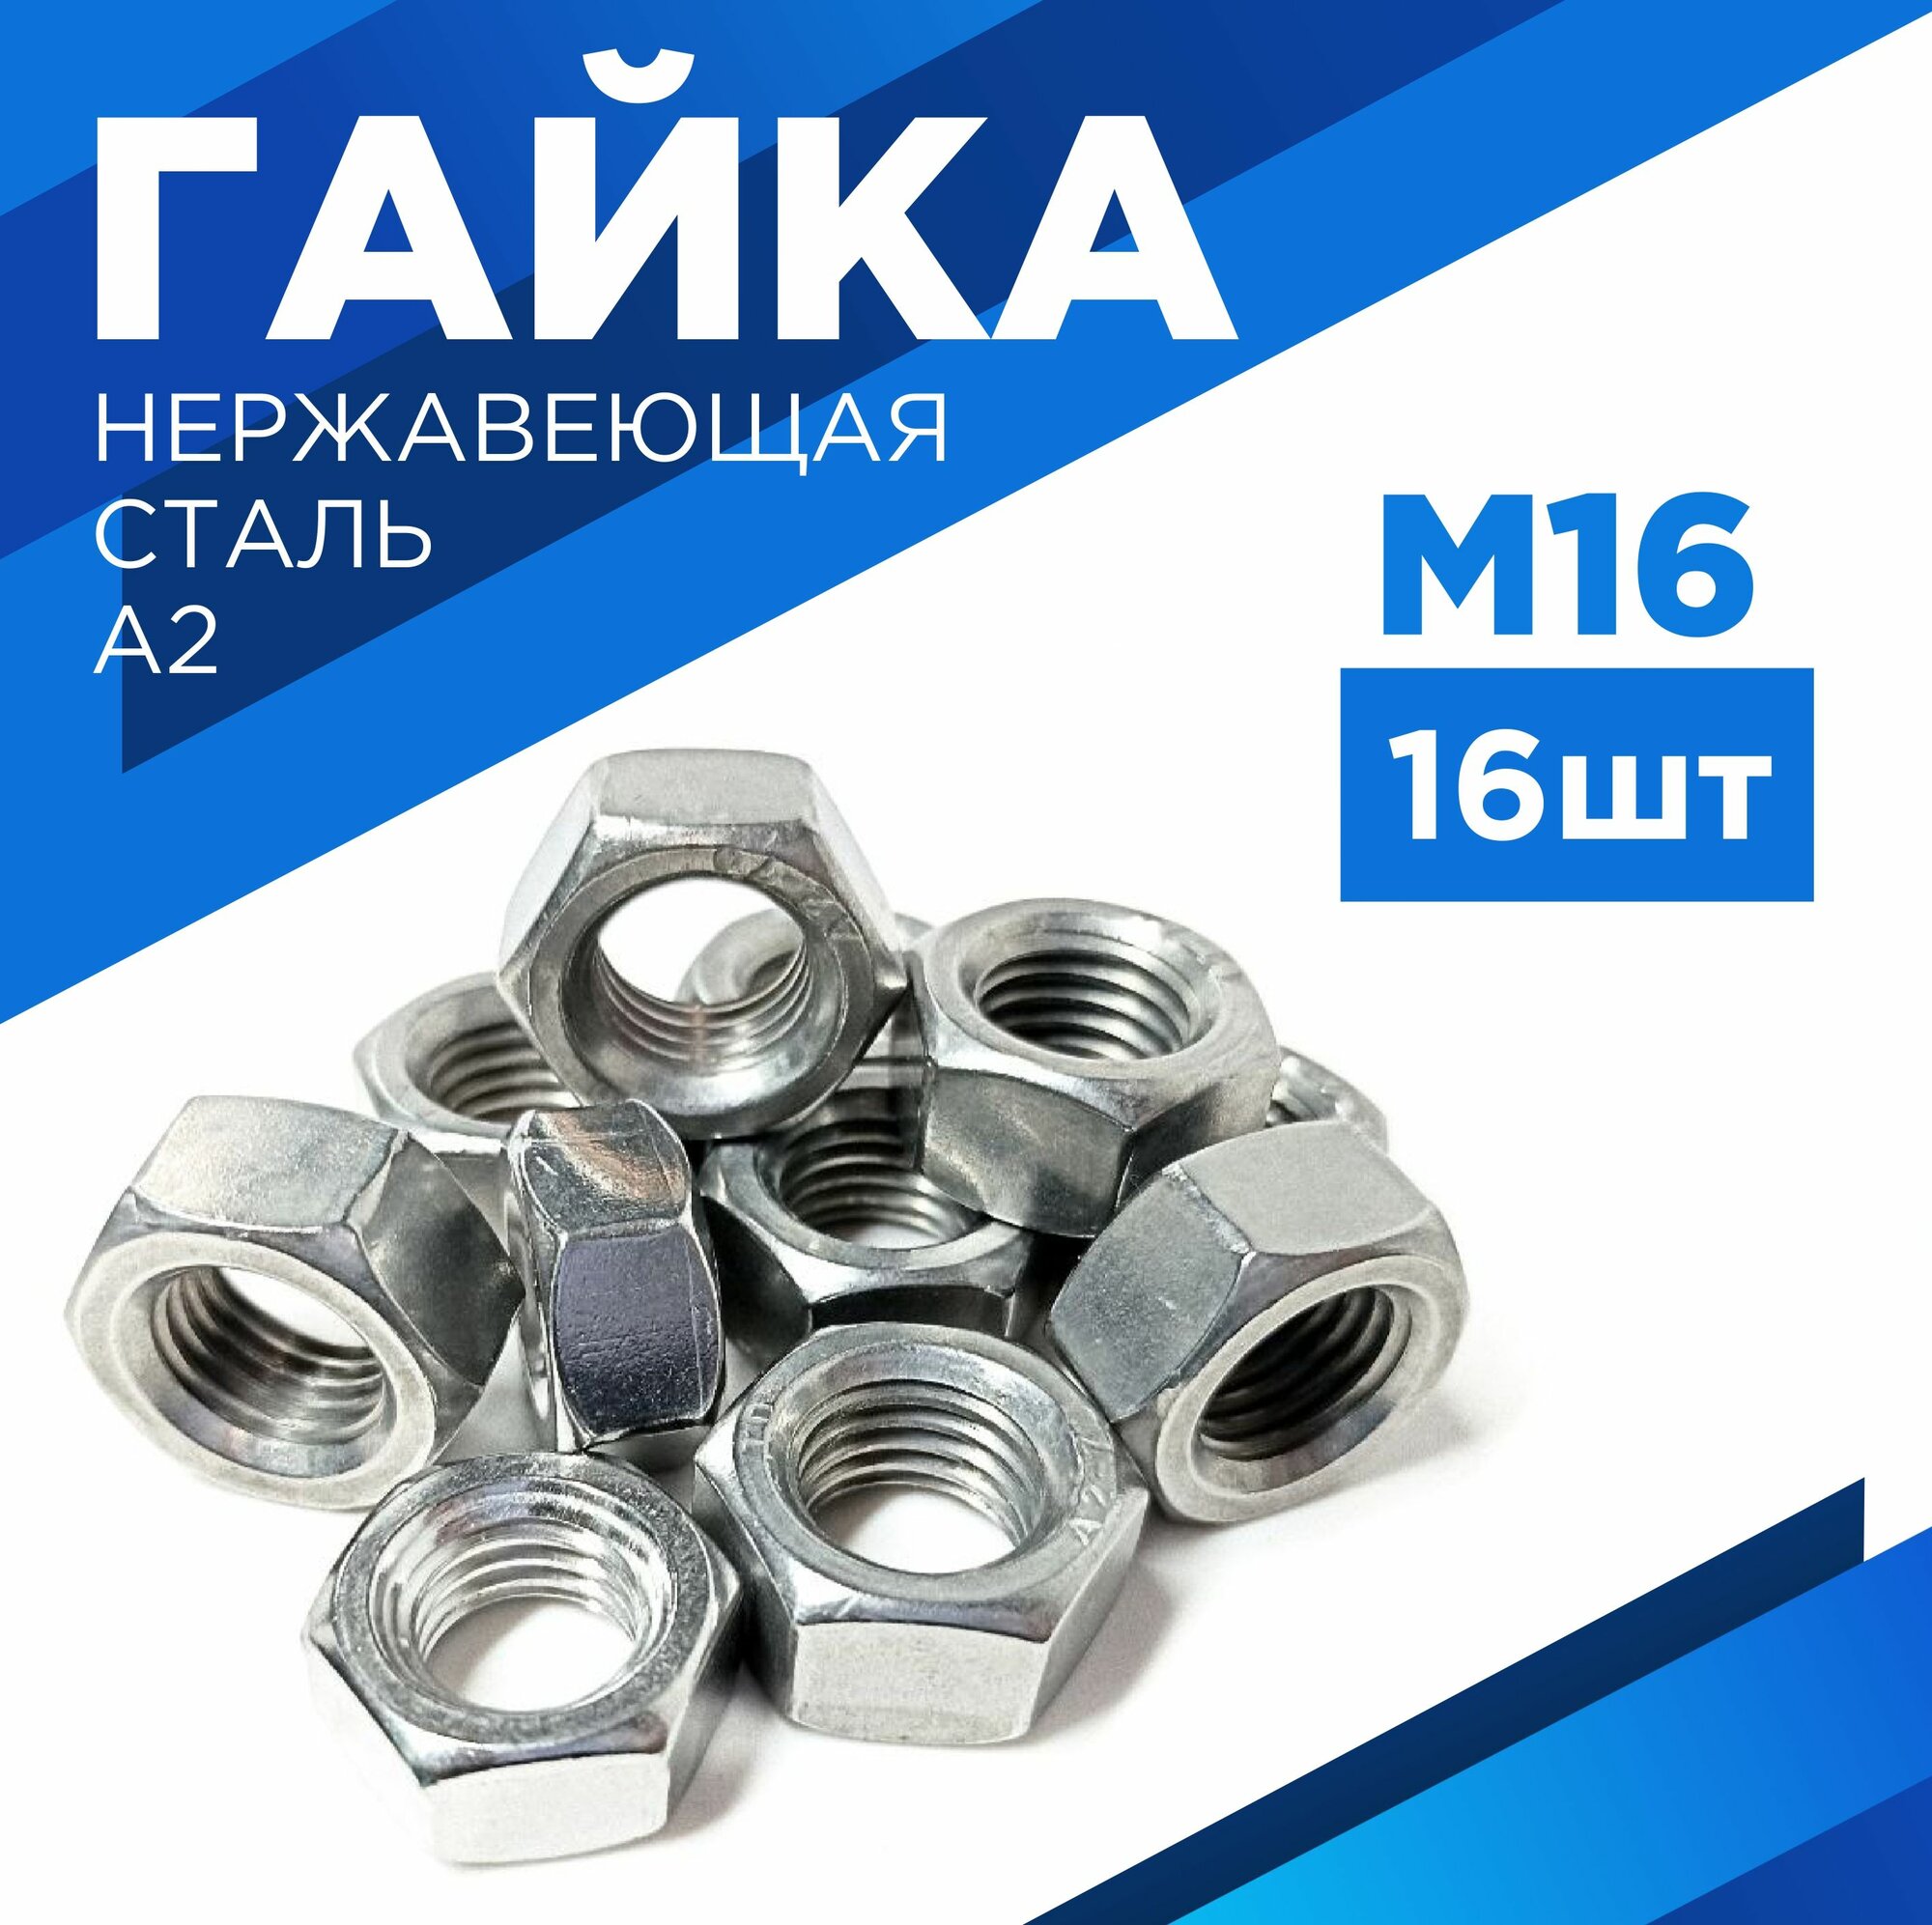 Гайка М16, нержавеющая сталь- A2, комплект 16 шт